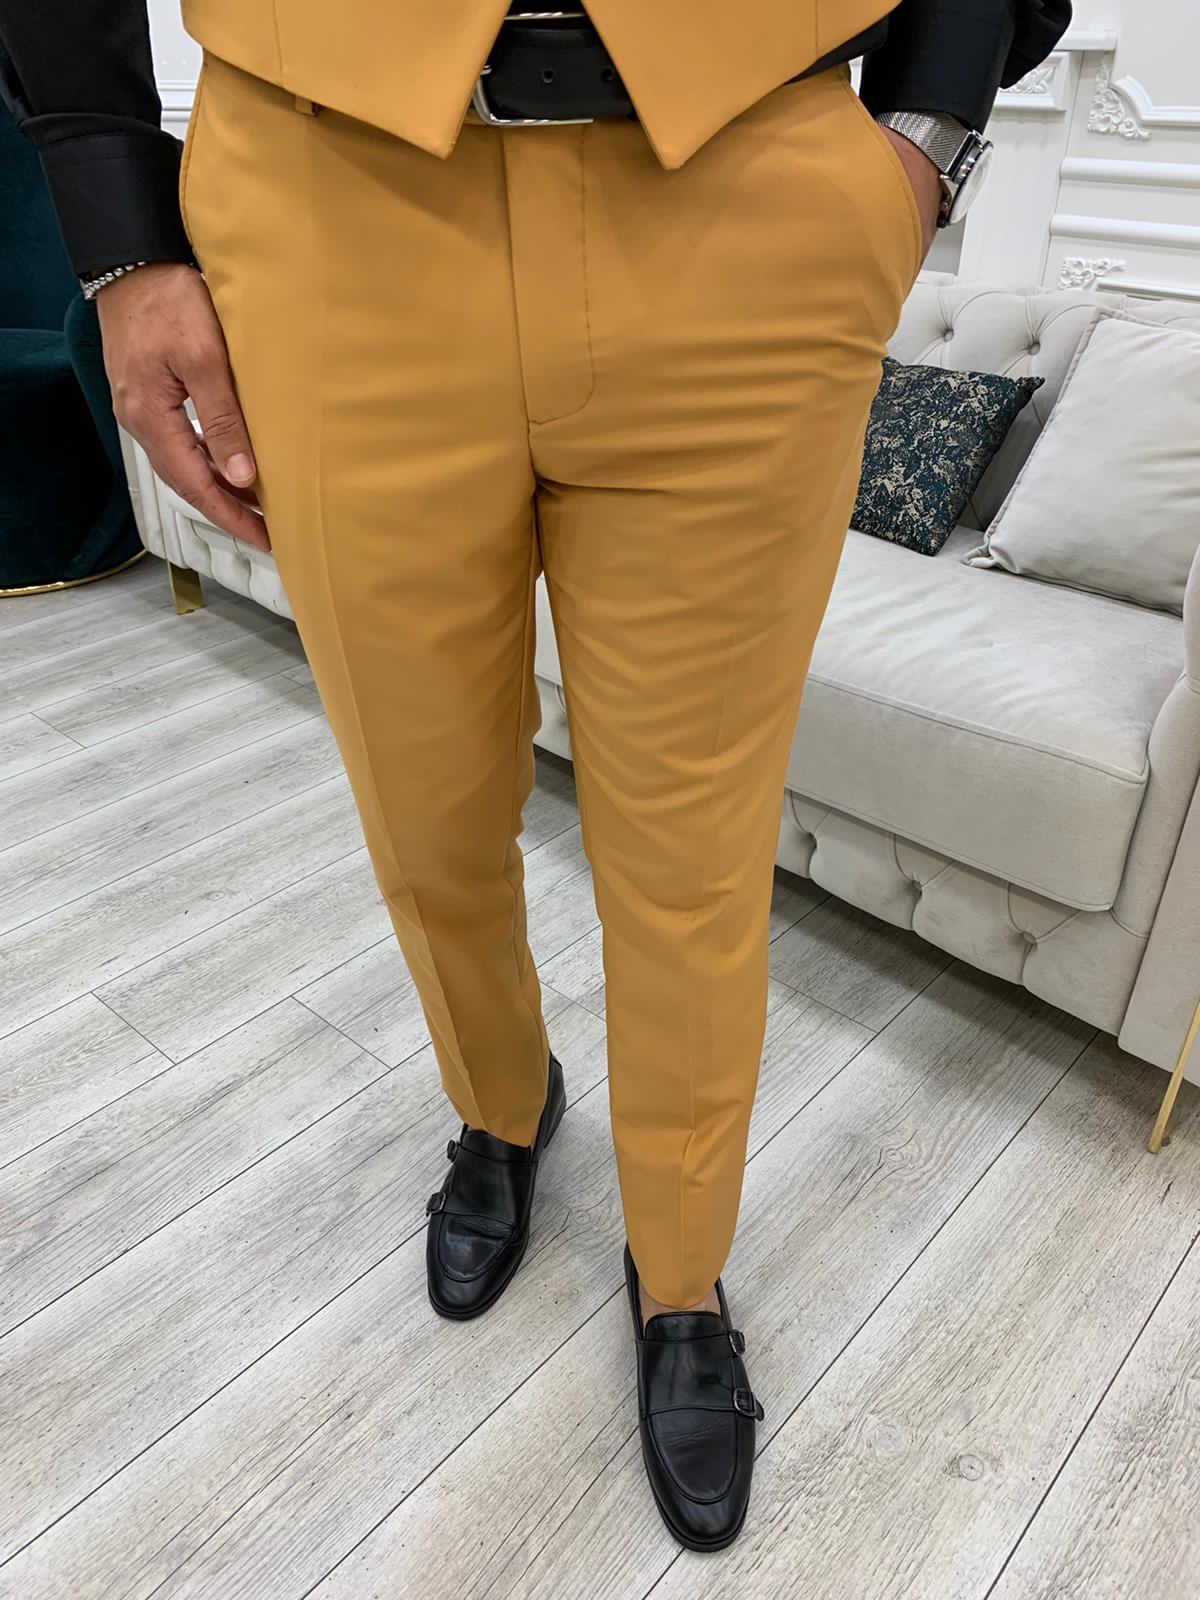 Colorada Slim Fit Mustard Suit - Hollo Men